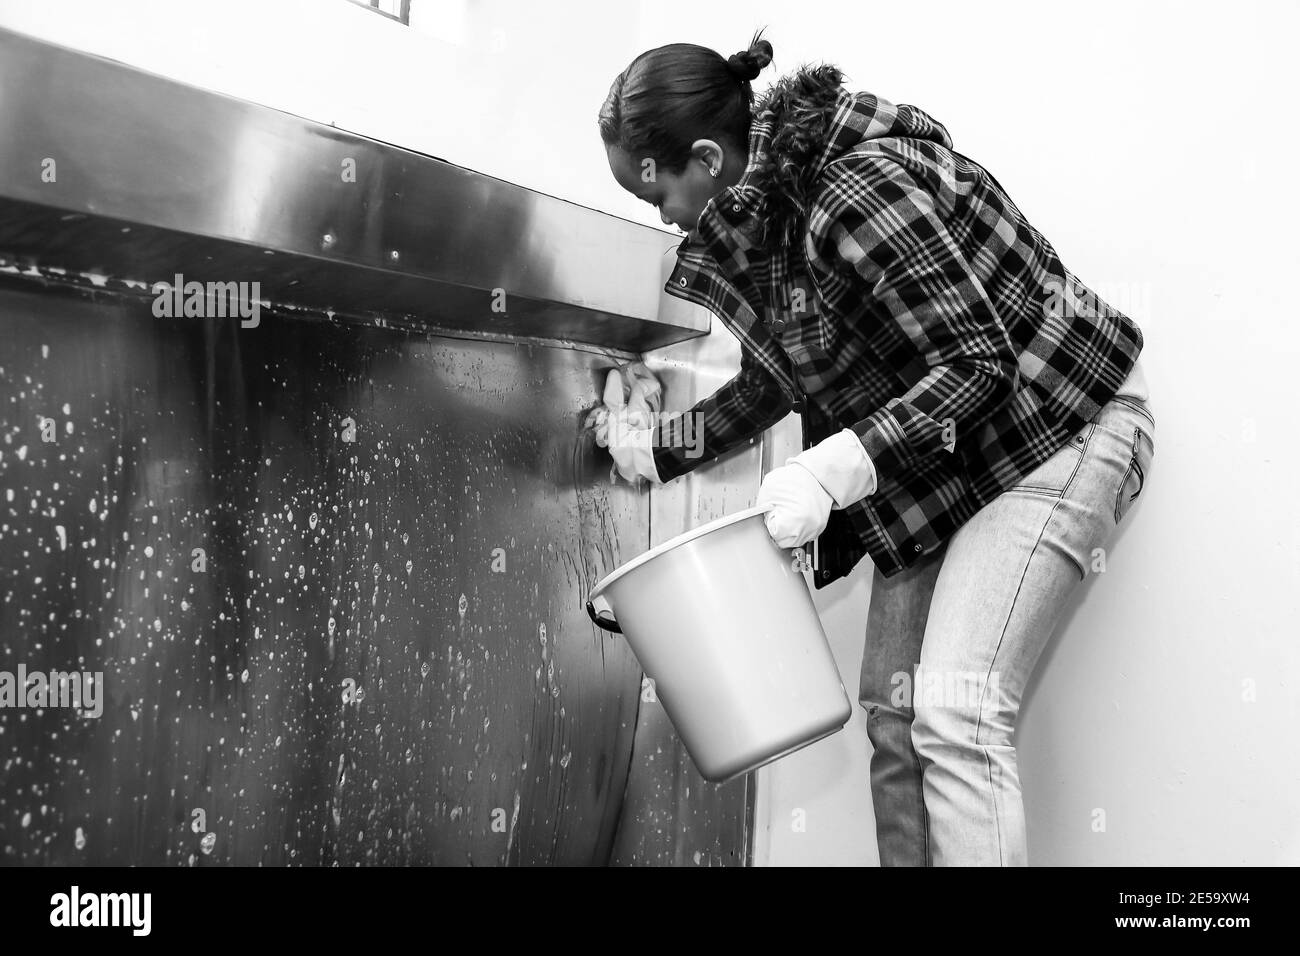 Person cleaning toilet Imágenes de stock en blanco y negro - Alamy